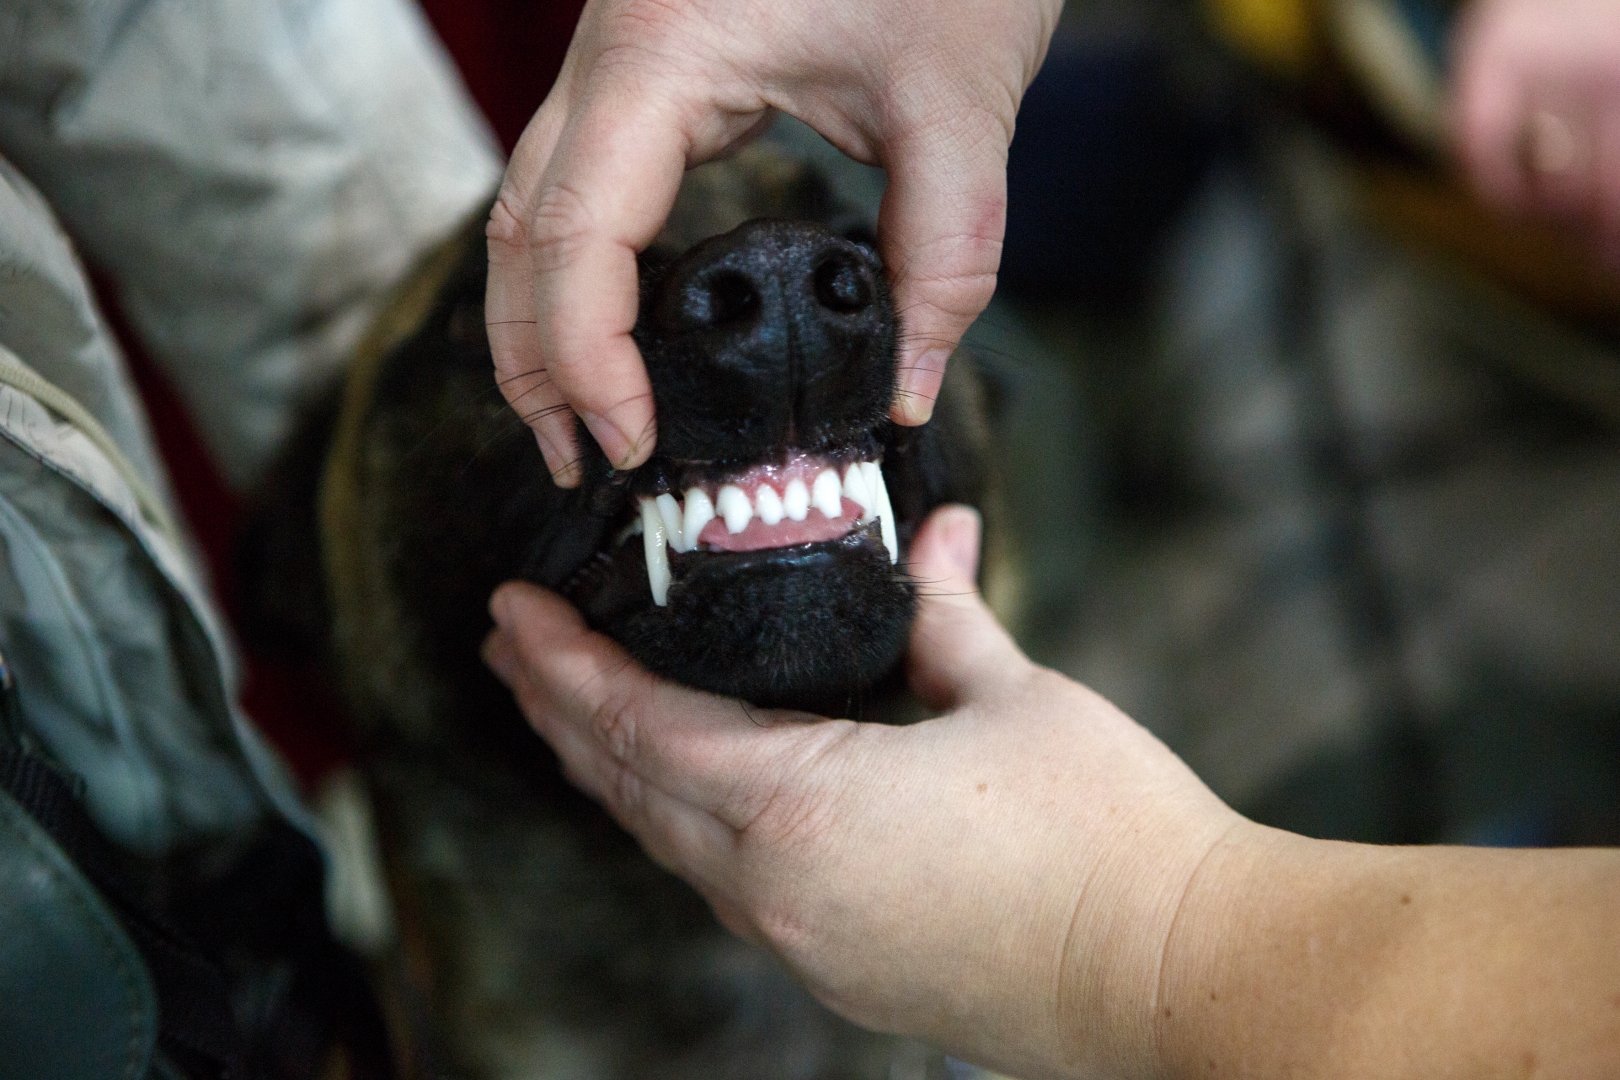 Показ зубов – обязательный пункт в оценке собаки. Чтобы она не проявляла агрессии и привыкала к этой процедуре, приучать к осмотру начинают еще с раннего возраста